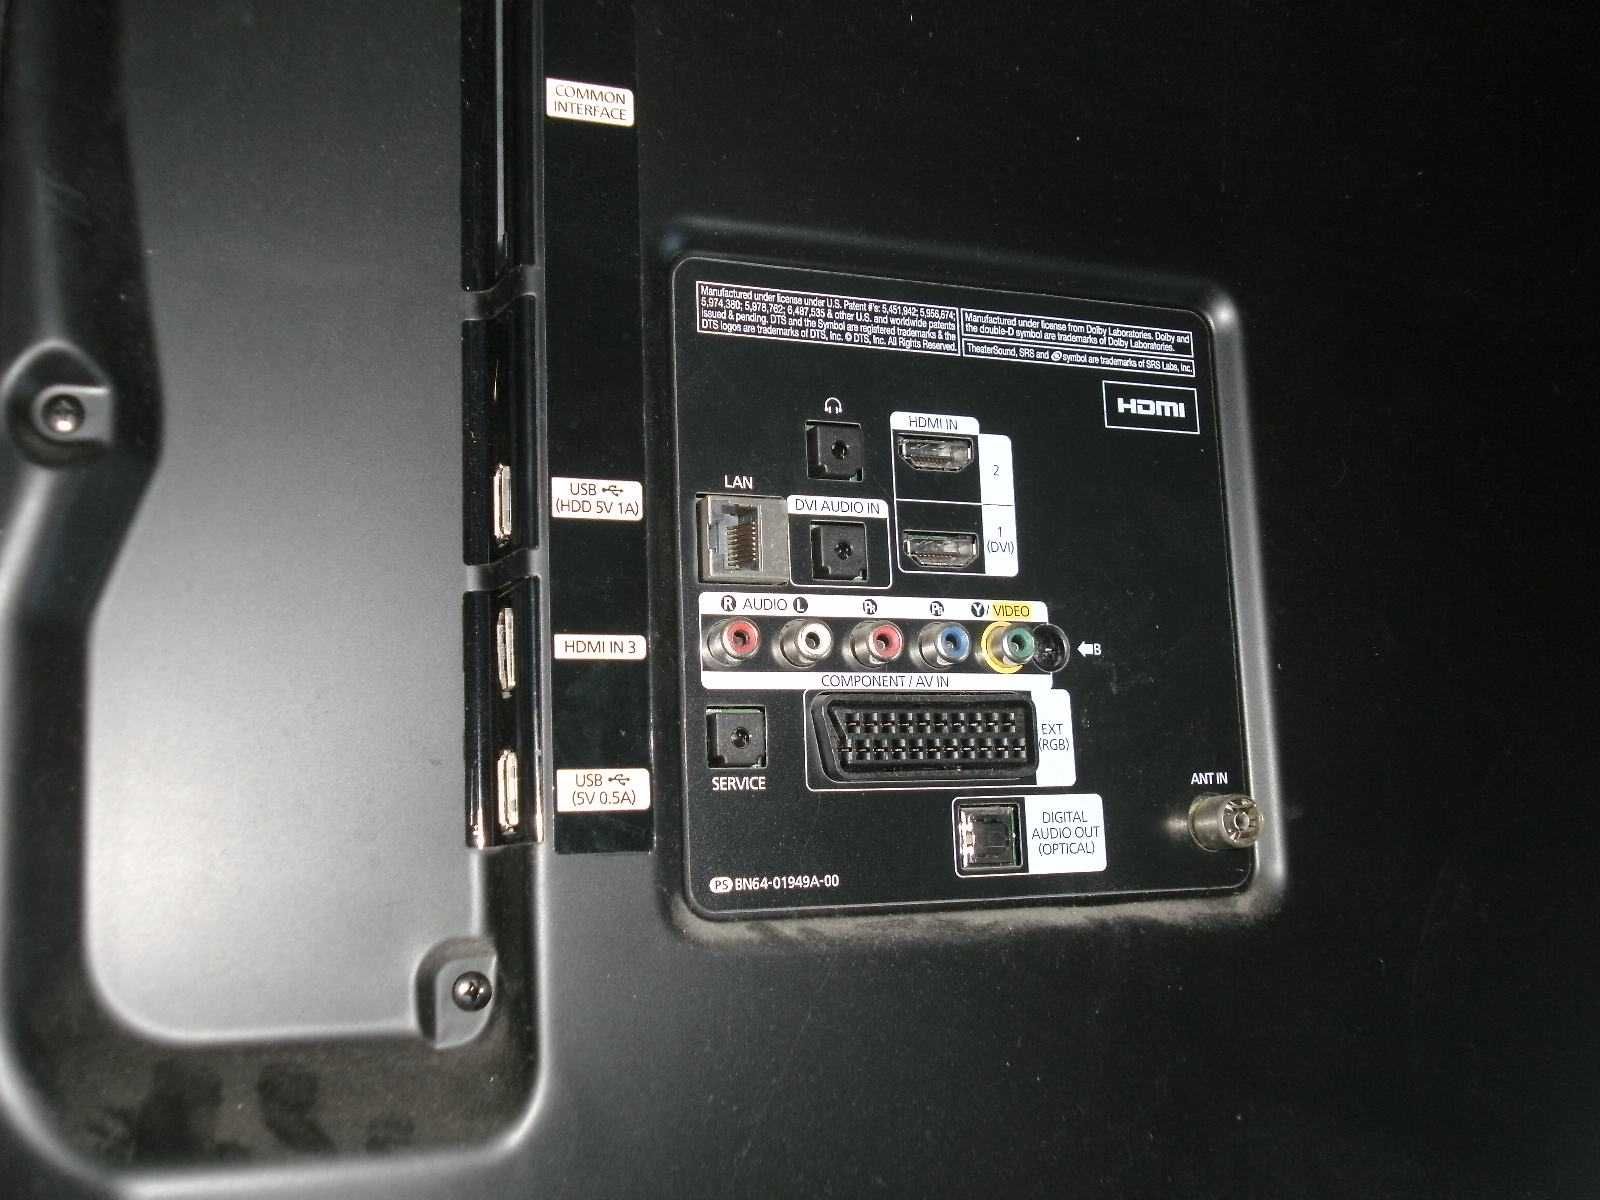 Samsung LED 50"- UE50ES5500- Matryca CAŁA- Wysyłka.